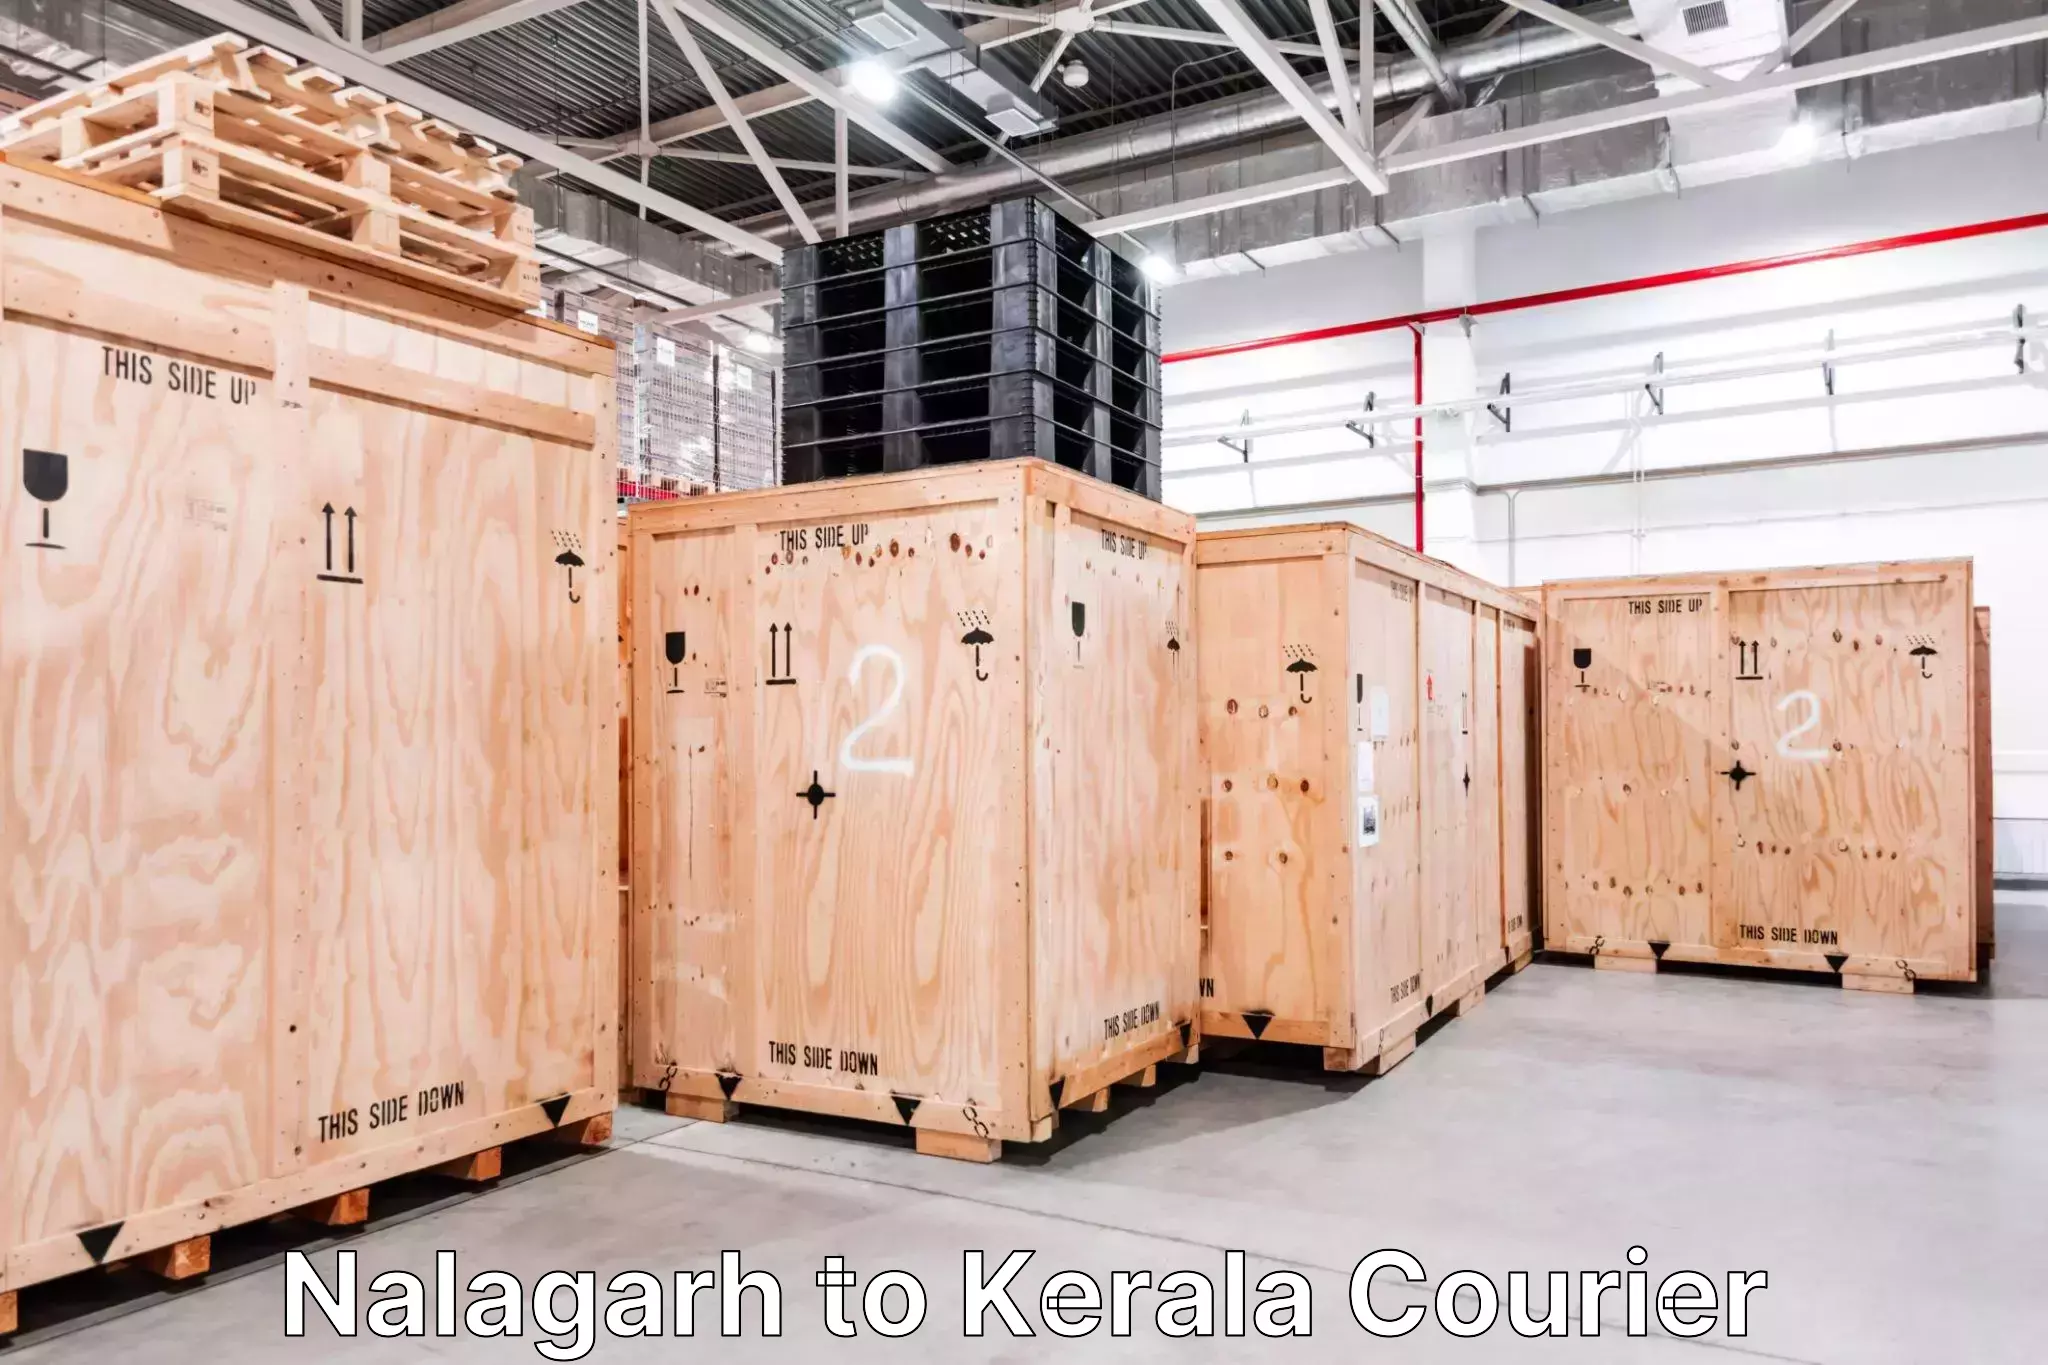 Luggage dispatch service Nalagarh to Vaikom